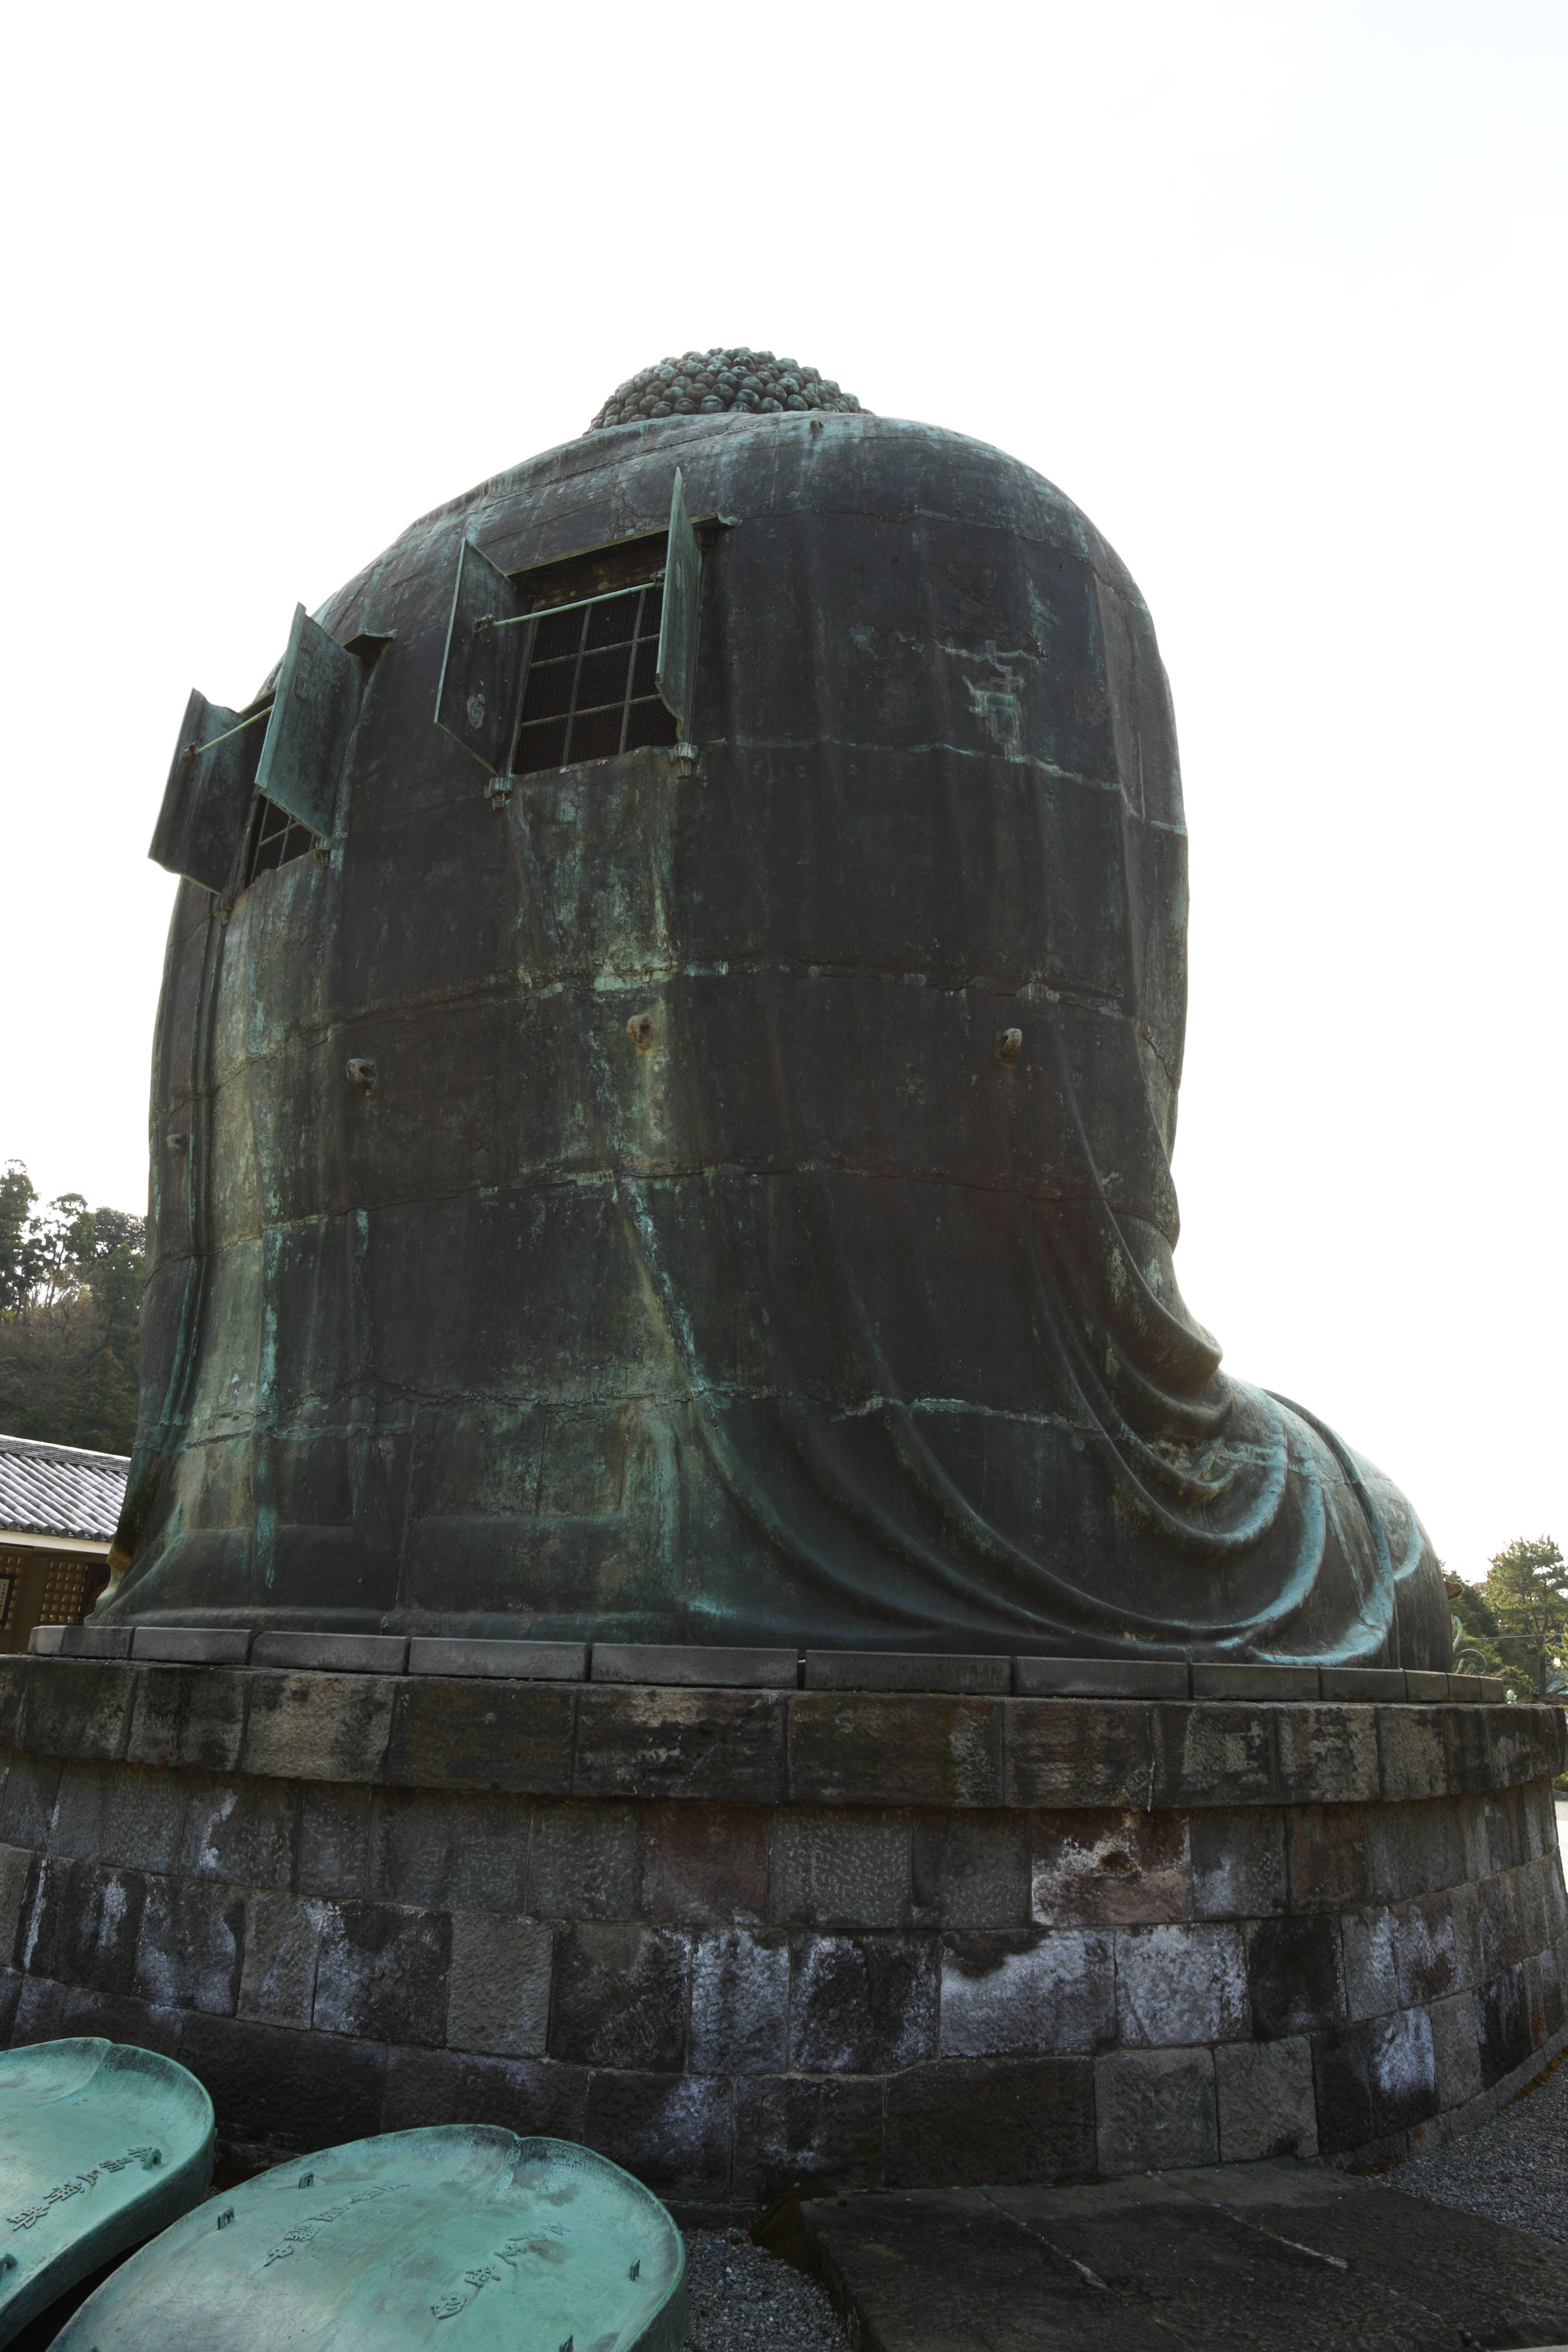 fotografia, material, livra, ajardine, imagine, proveja fotografia,Kamakura grande esttua de Buda, , , Soong nomeiam, Escultura de Budismo